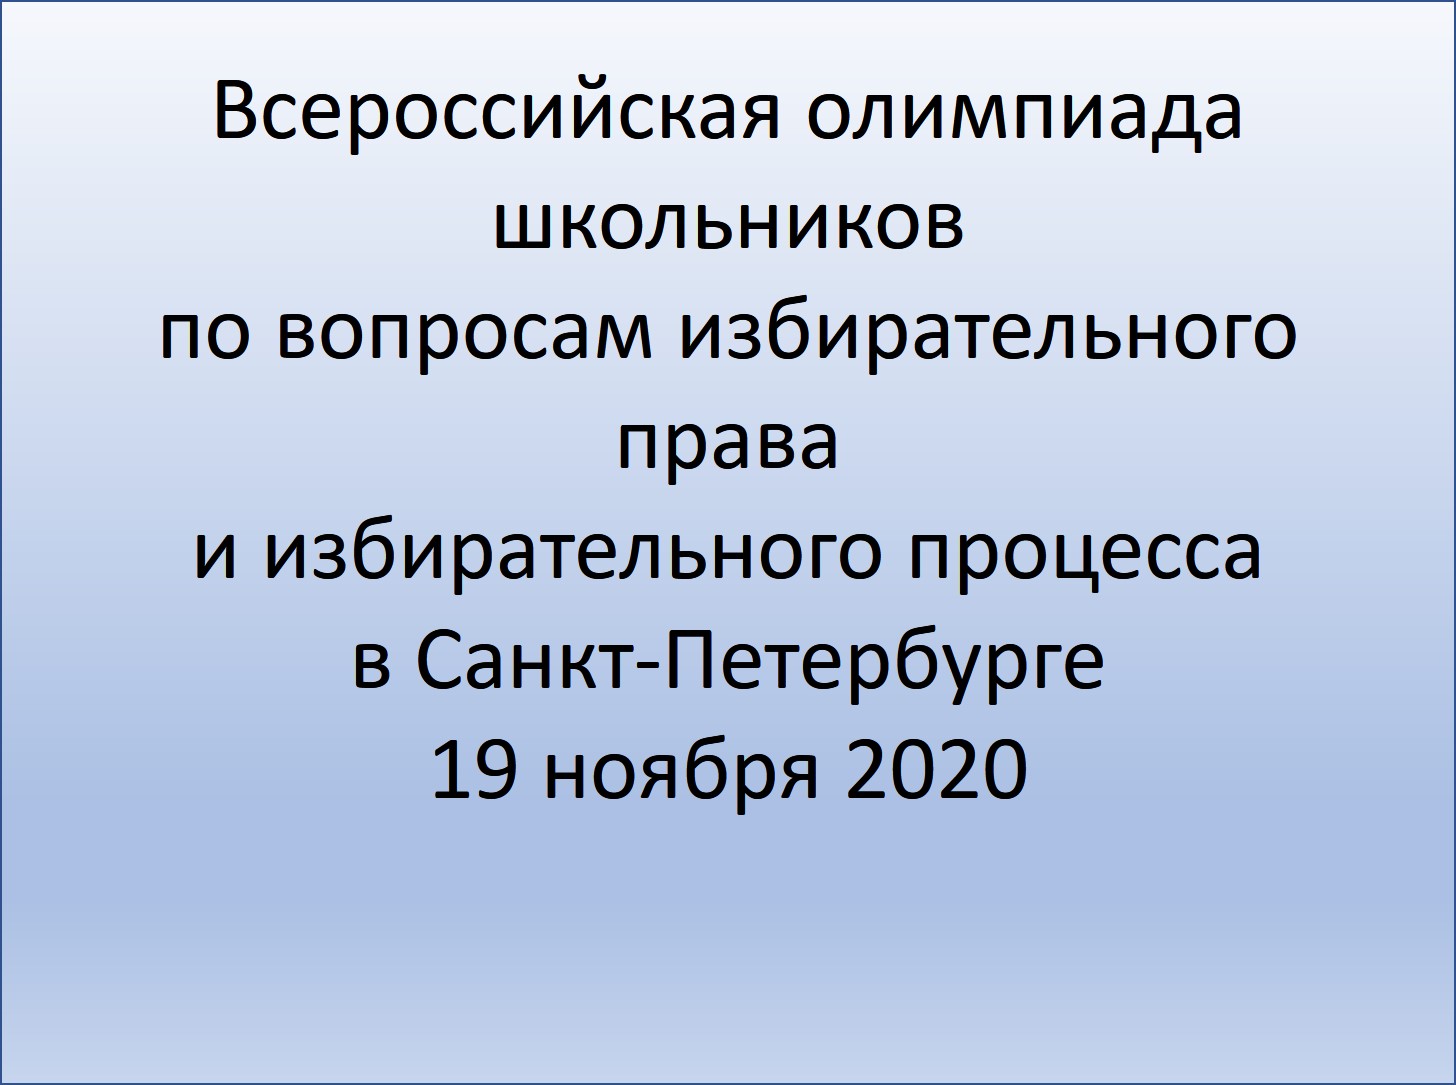 Всероссийская олимпиада школьников по вопросам избирательного права и избирательного процесса в Санкт-Петербурге 19 ноября 2020